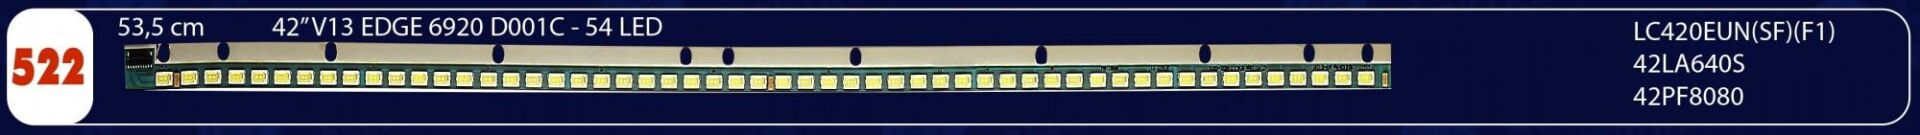 LCD LED 522- SN042LD182VG2-V2FA B42 LB 9377 42LM660S,LG42LM640S,E012-WELED807-ÇAĞLAR